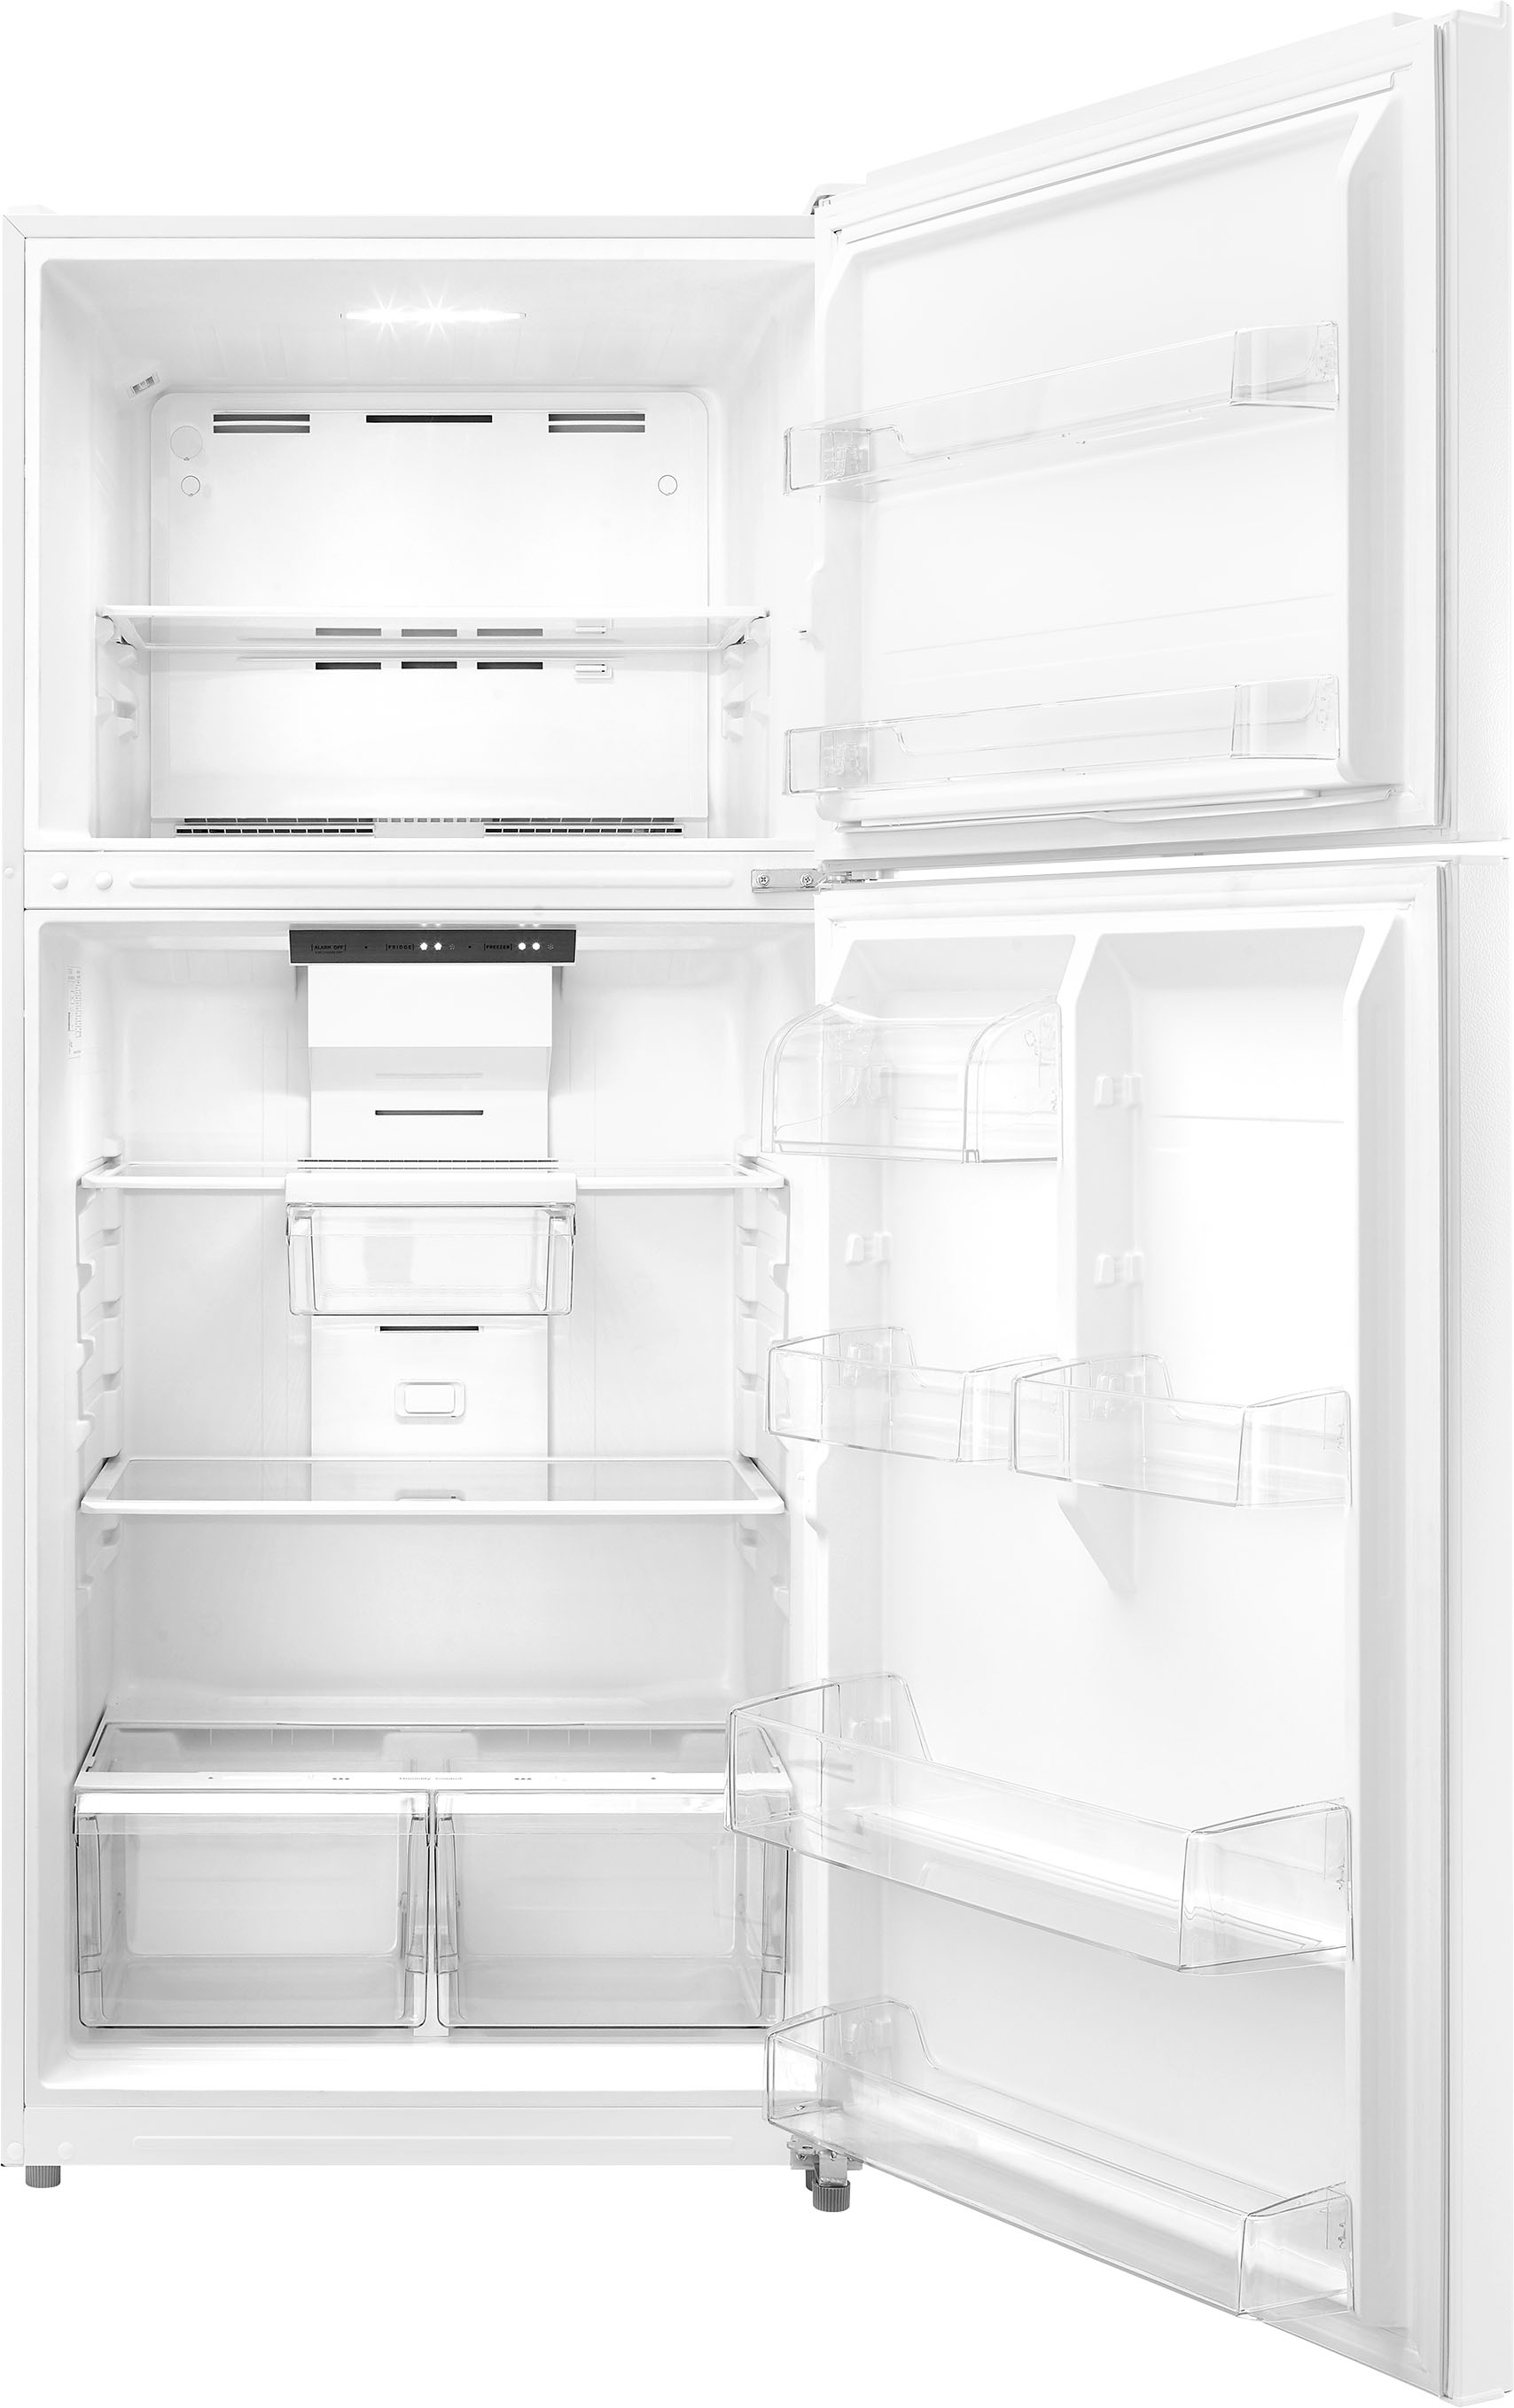 Customer Reviews: Insignia™ 18 Cu. Ft. Top-Freezer Refrigerator ...